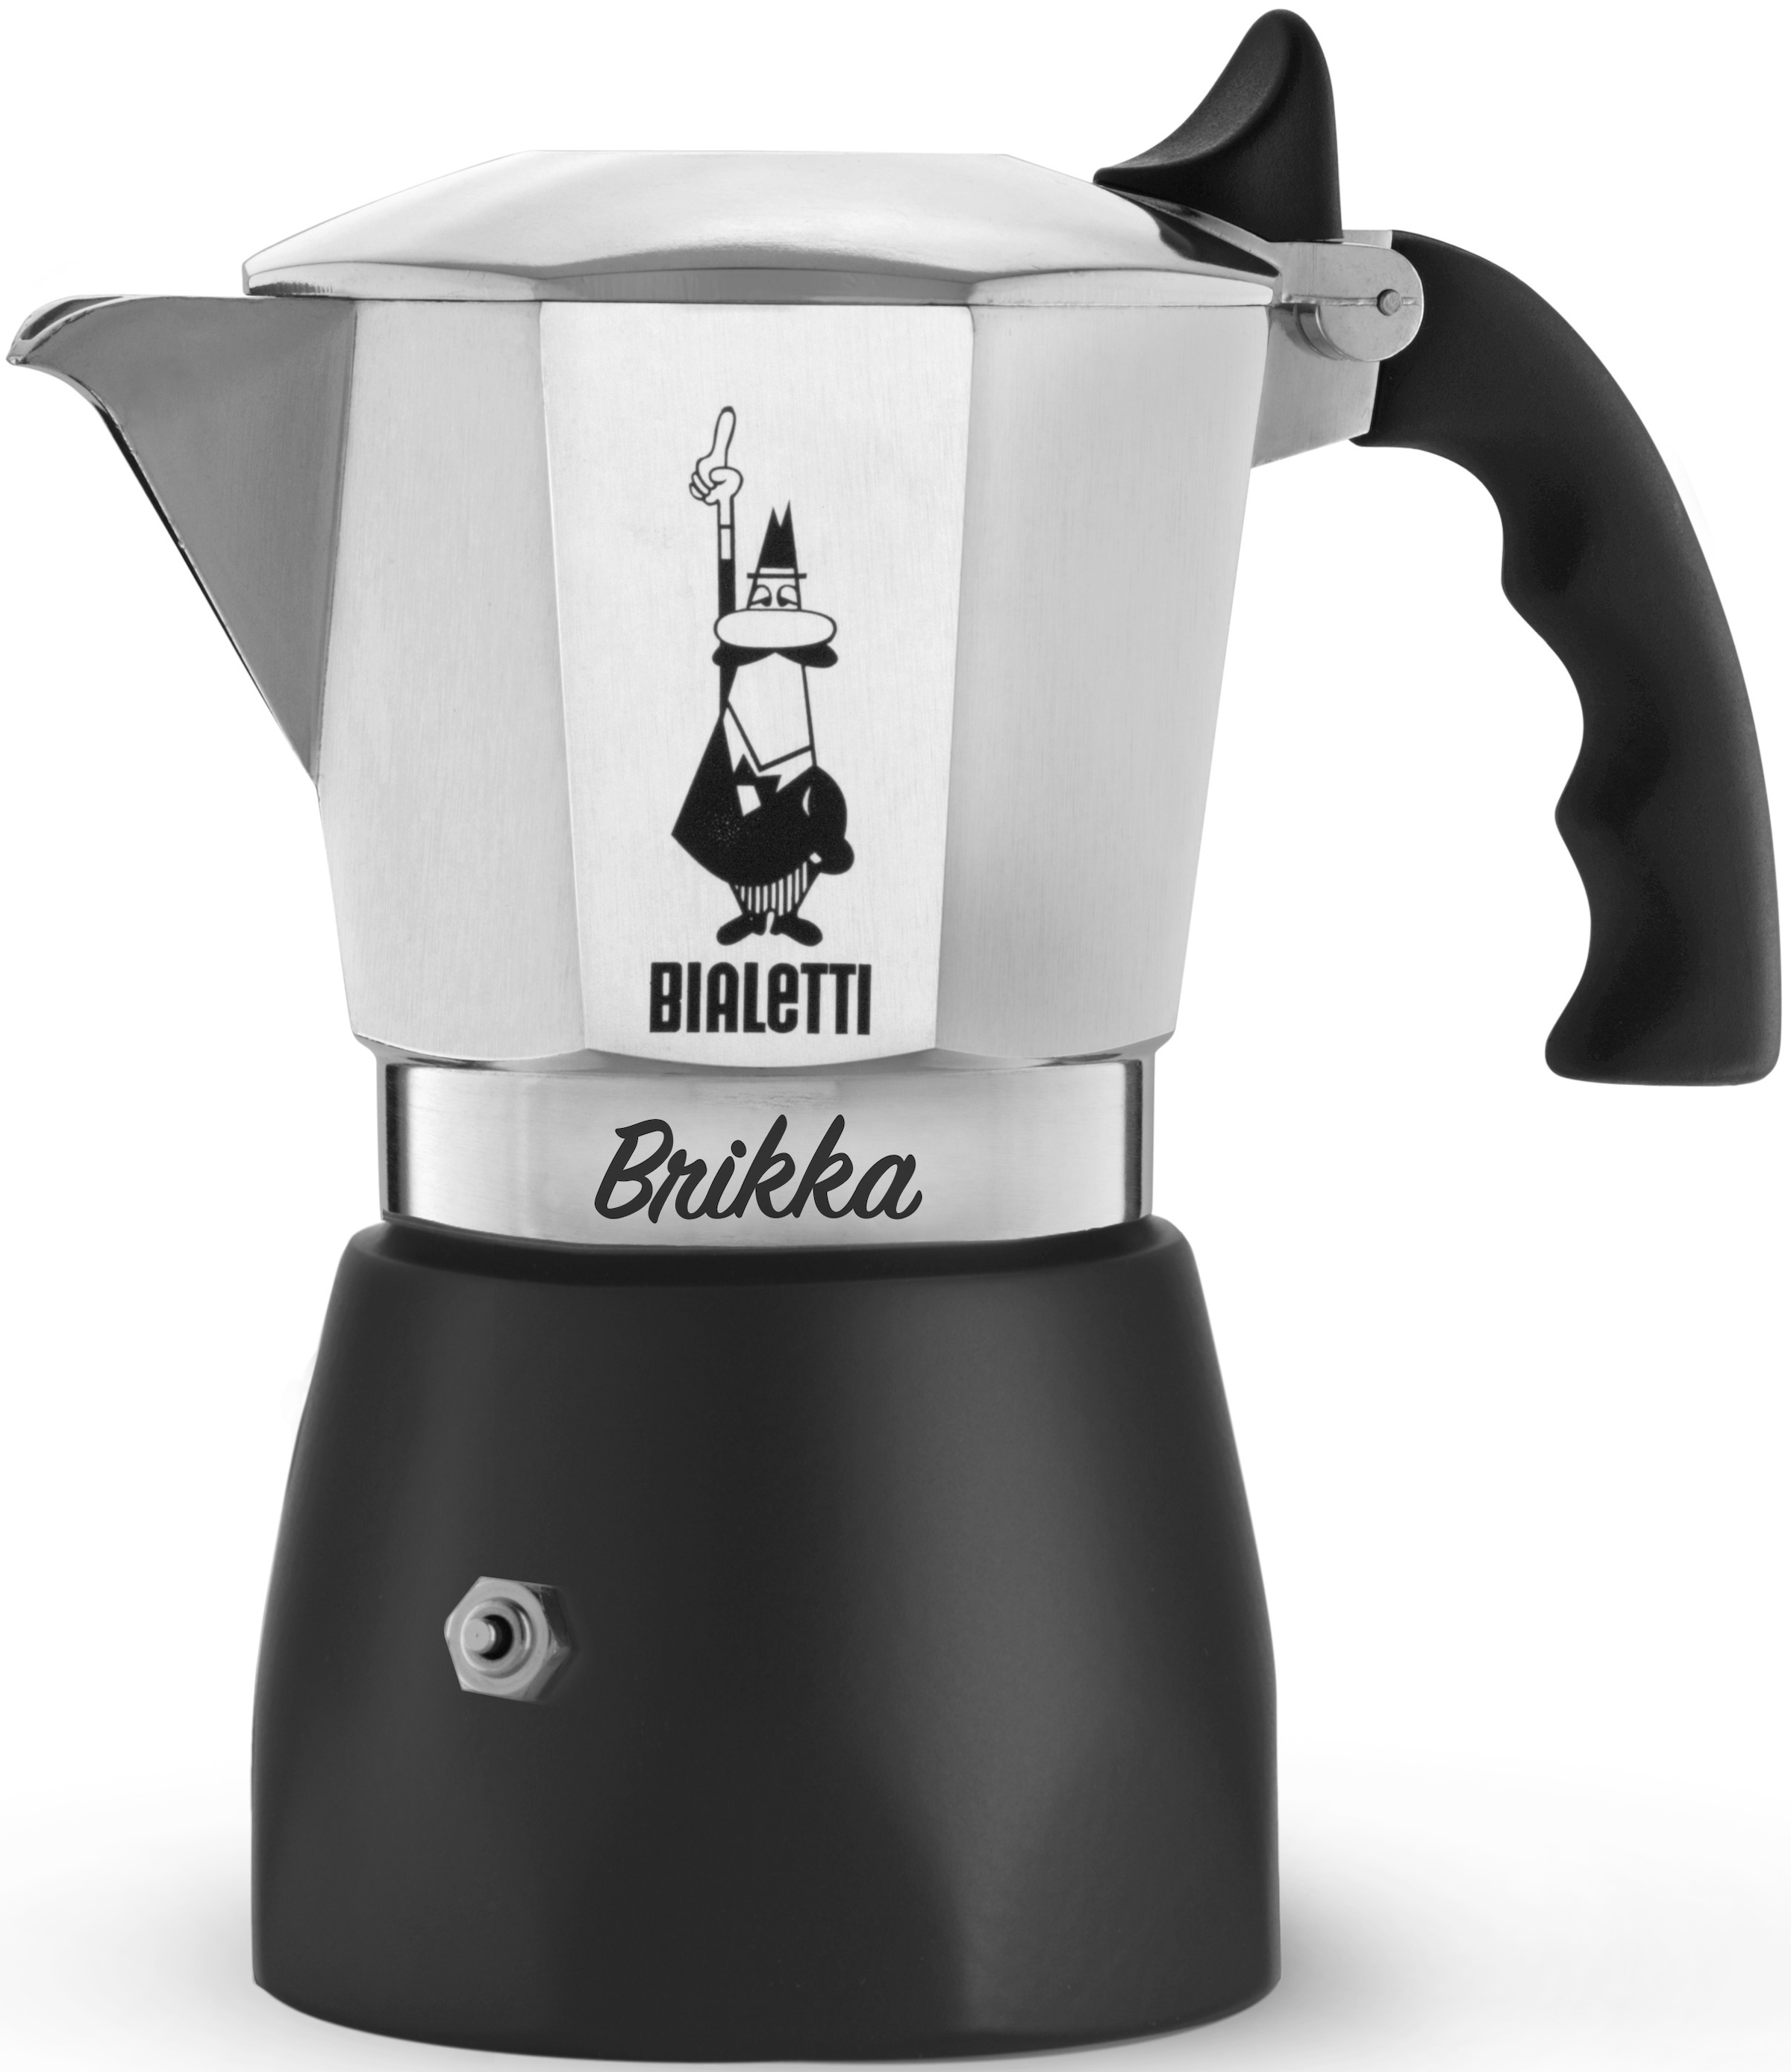 BIALETTI Espressokocher »New Brikka 2020«, 0,15 l Kaffeekanne, 4 Tassen